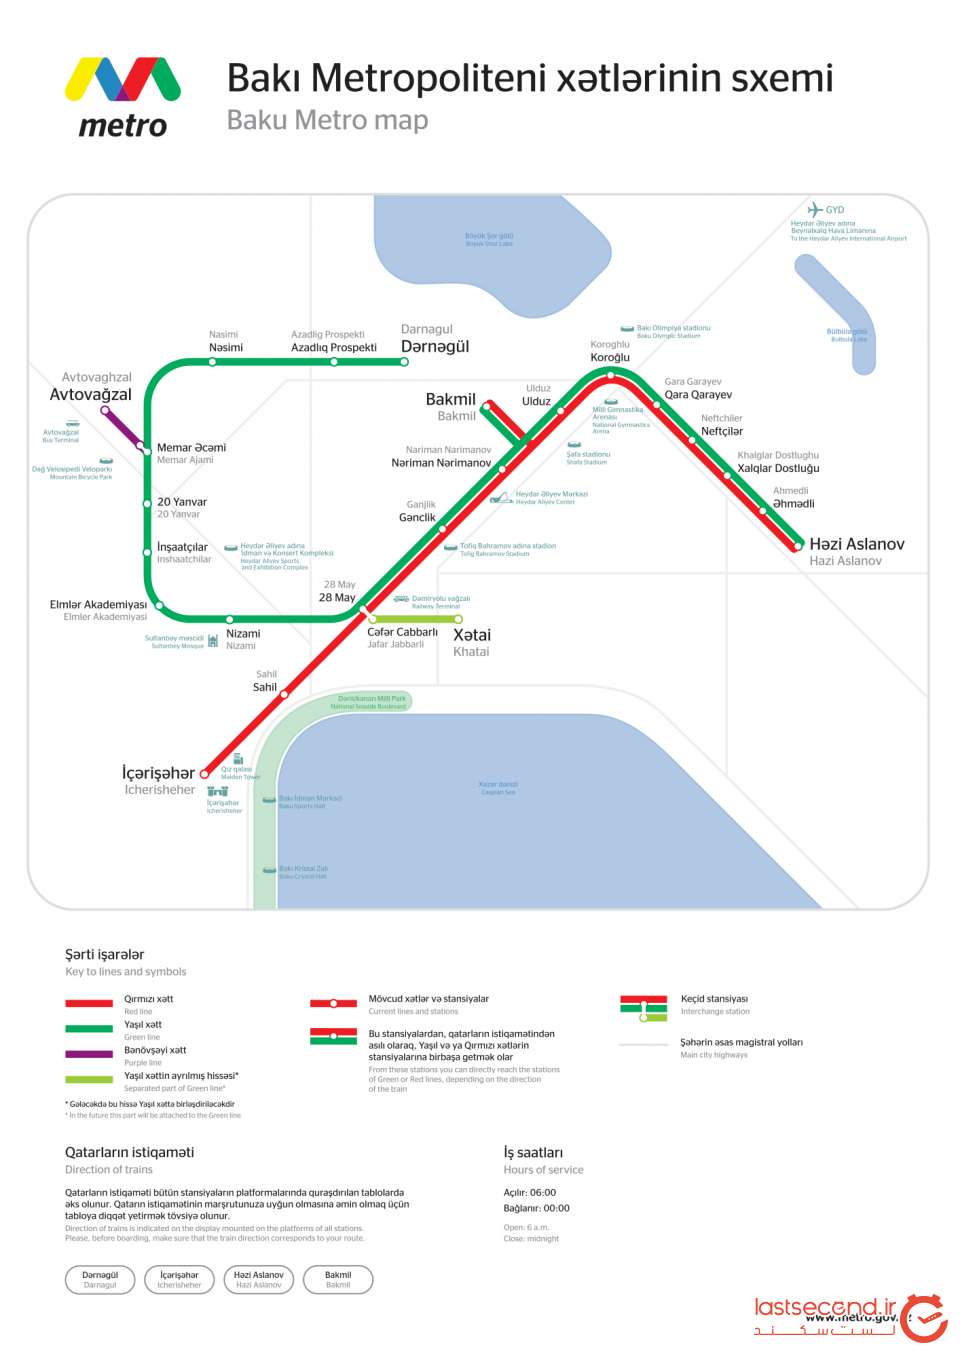 مسیر مترو در باکو